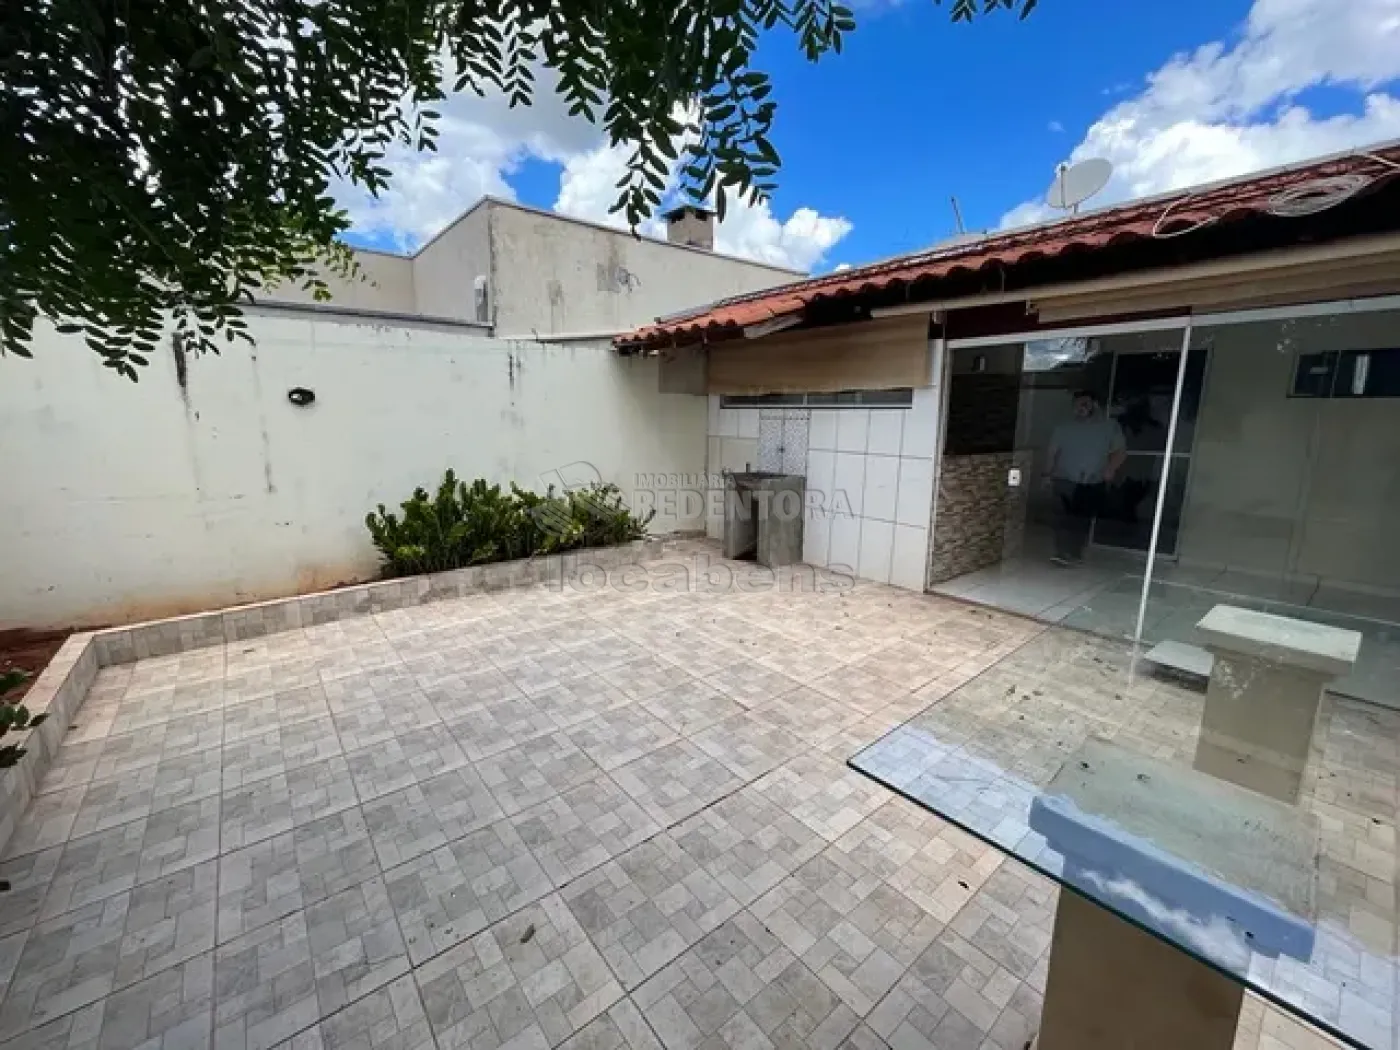 Comprar Casa / Condomínio em São José do Rio Preto apenas R$ 320.000,00 - Foto 1